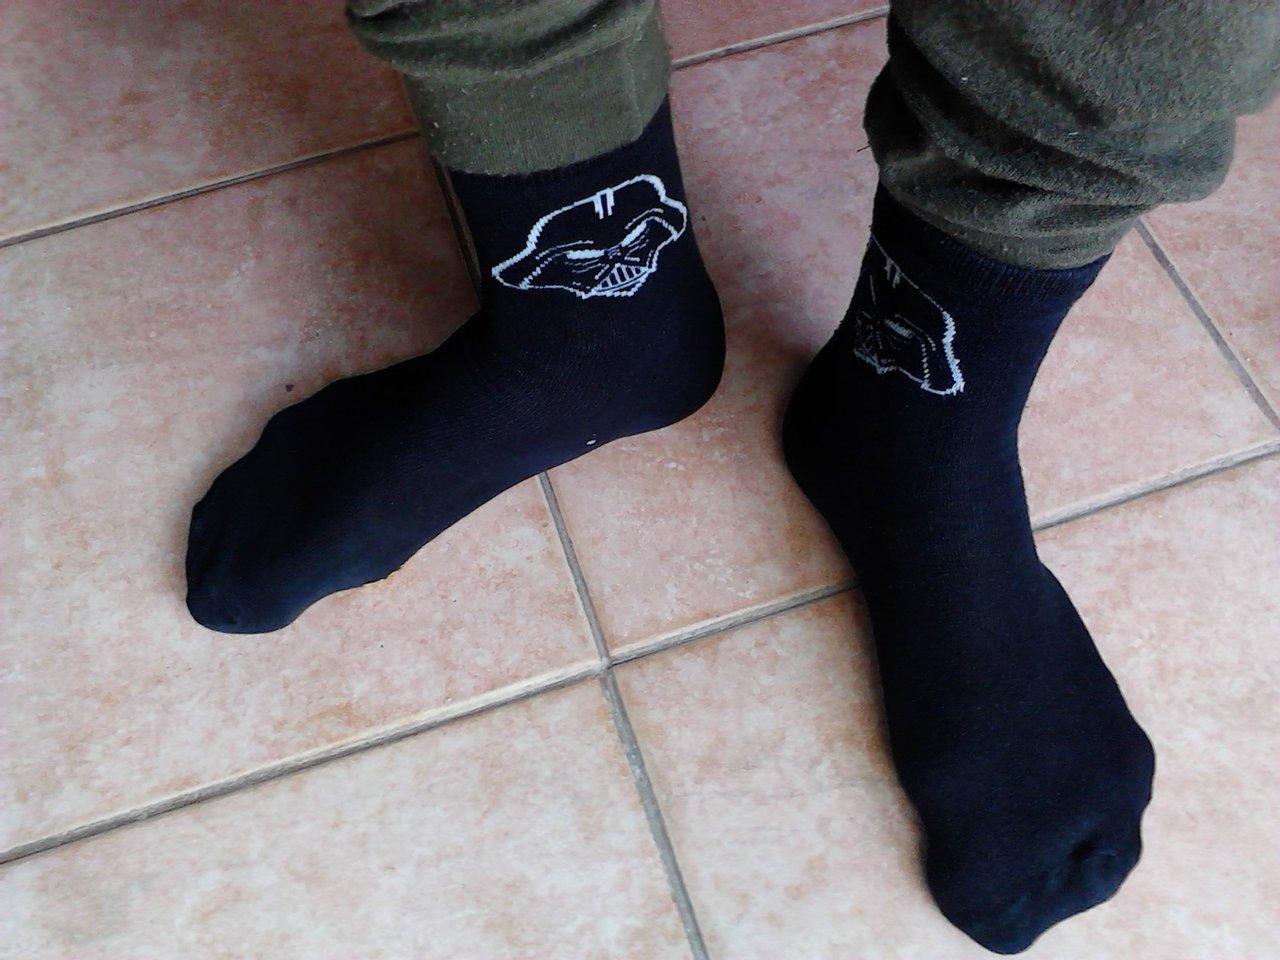 archívna fotografia ponožiek zachránených z kontajnera (kt. neviem už, kde sú :D )